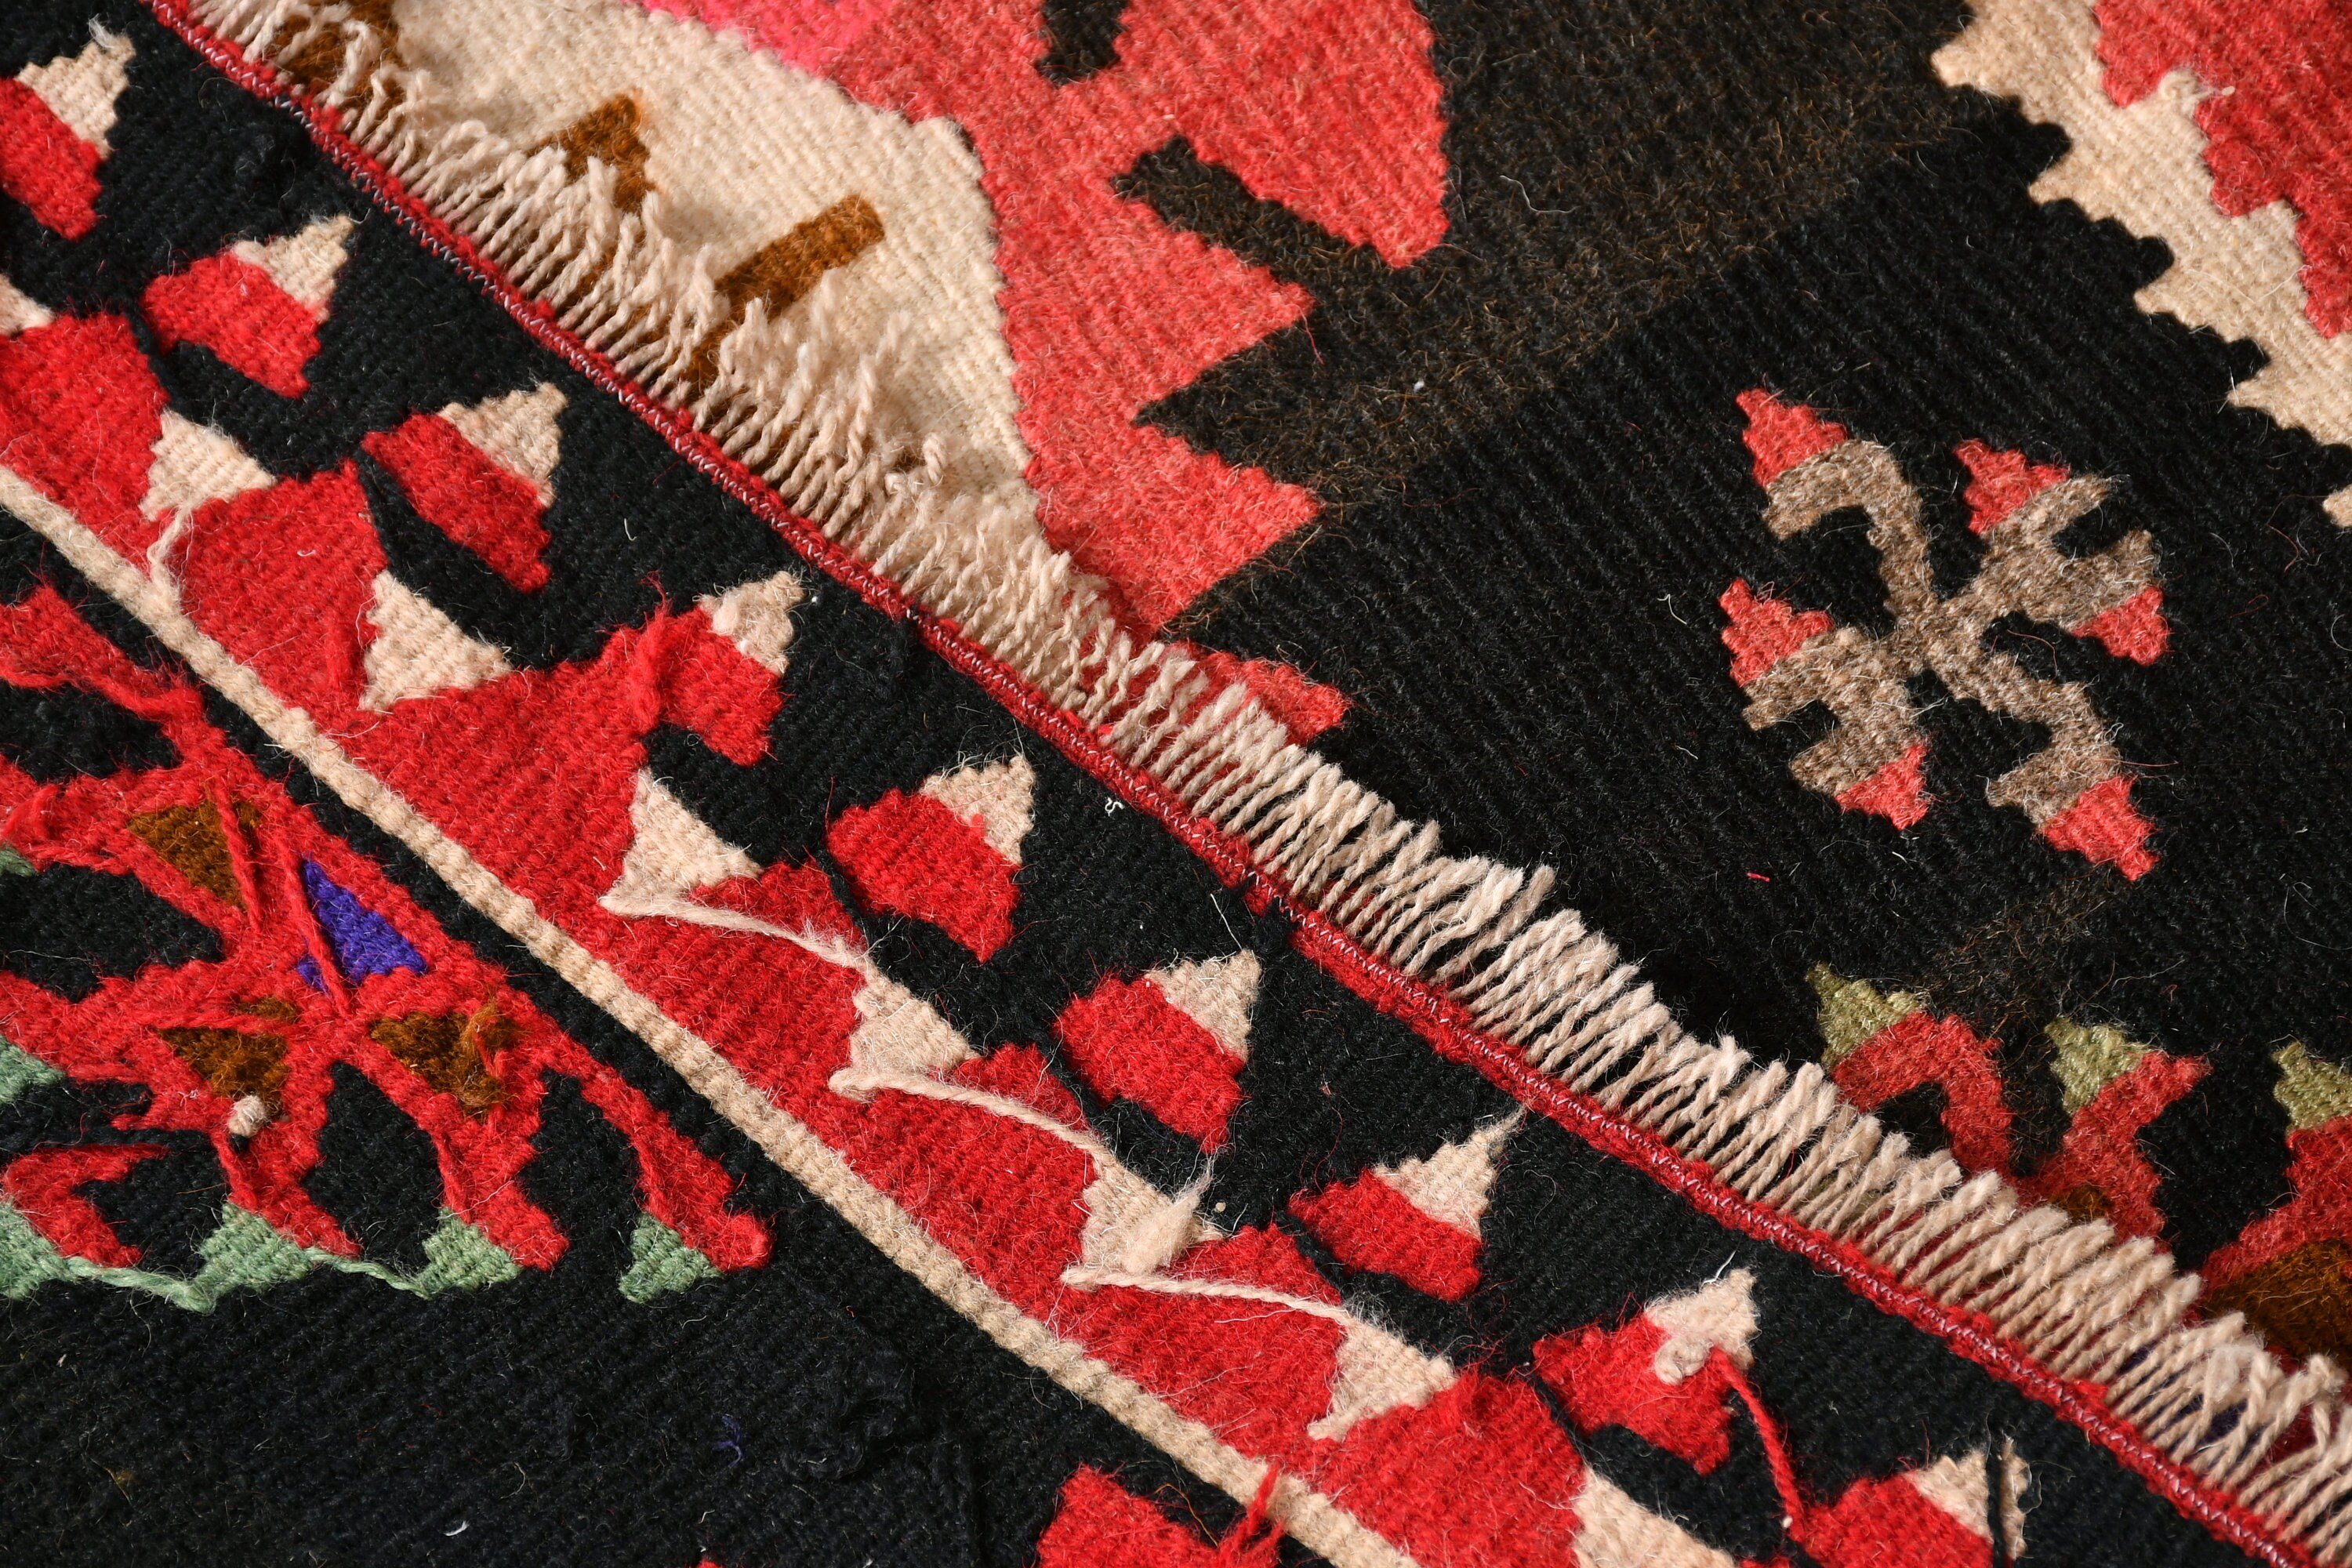 Eclectic Rugs, Turkish Rugs, Vintage Rug, 2.7x4.3 ft Small Rug, Bath Rug, Kilim, Door Mat Rugs, Wool Rugs, Pink Moroccan Rug, Oriental Rugs